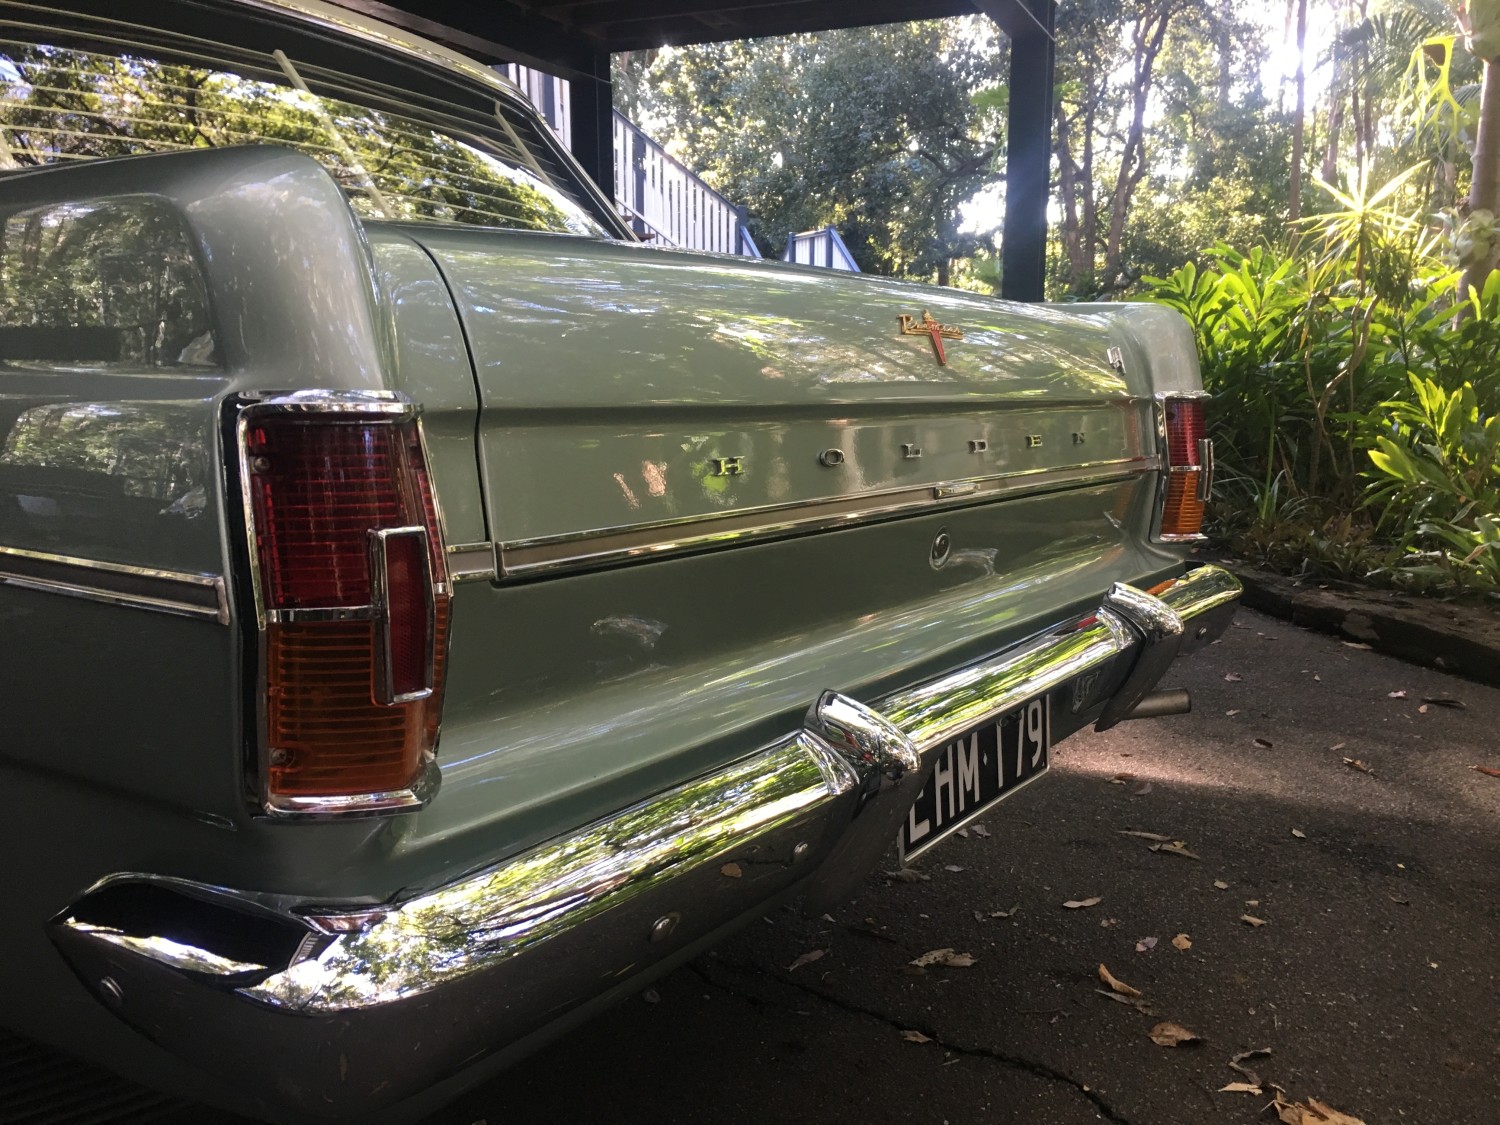 1964 Holden EH Premier